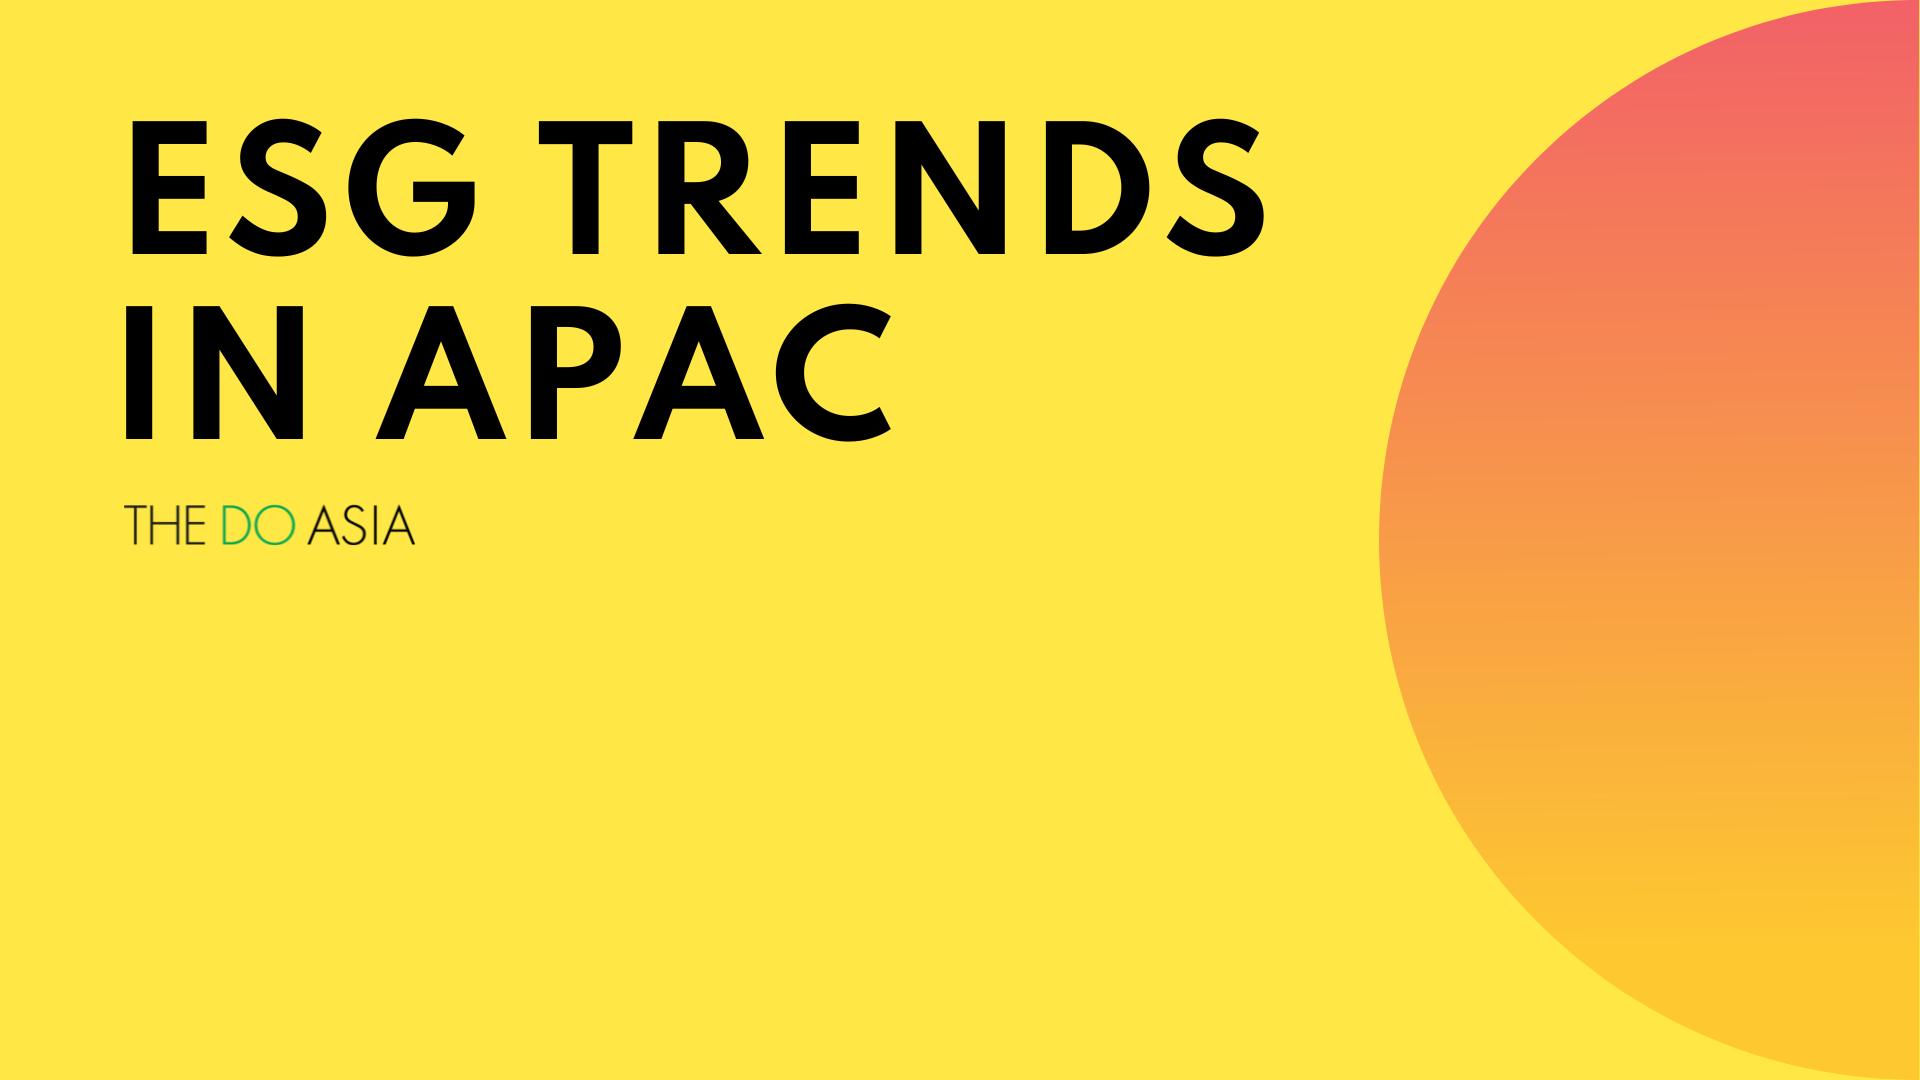 ESG trends in APAC